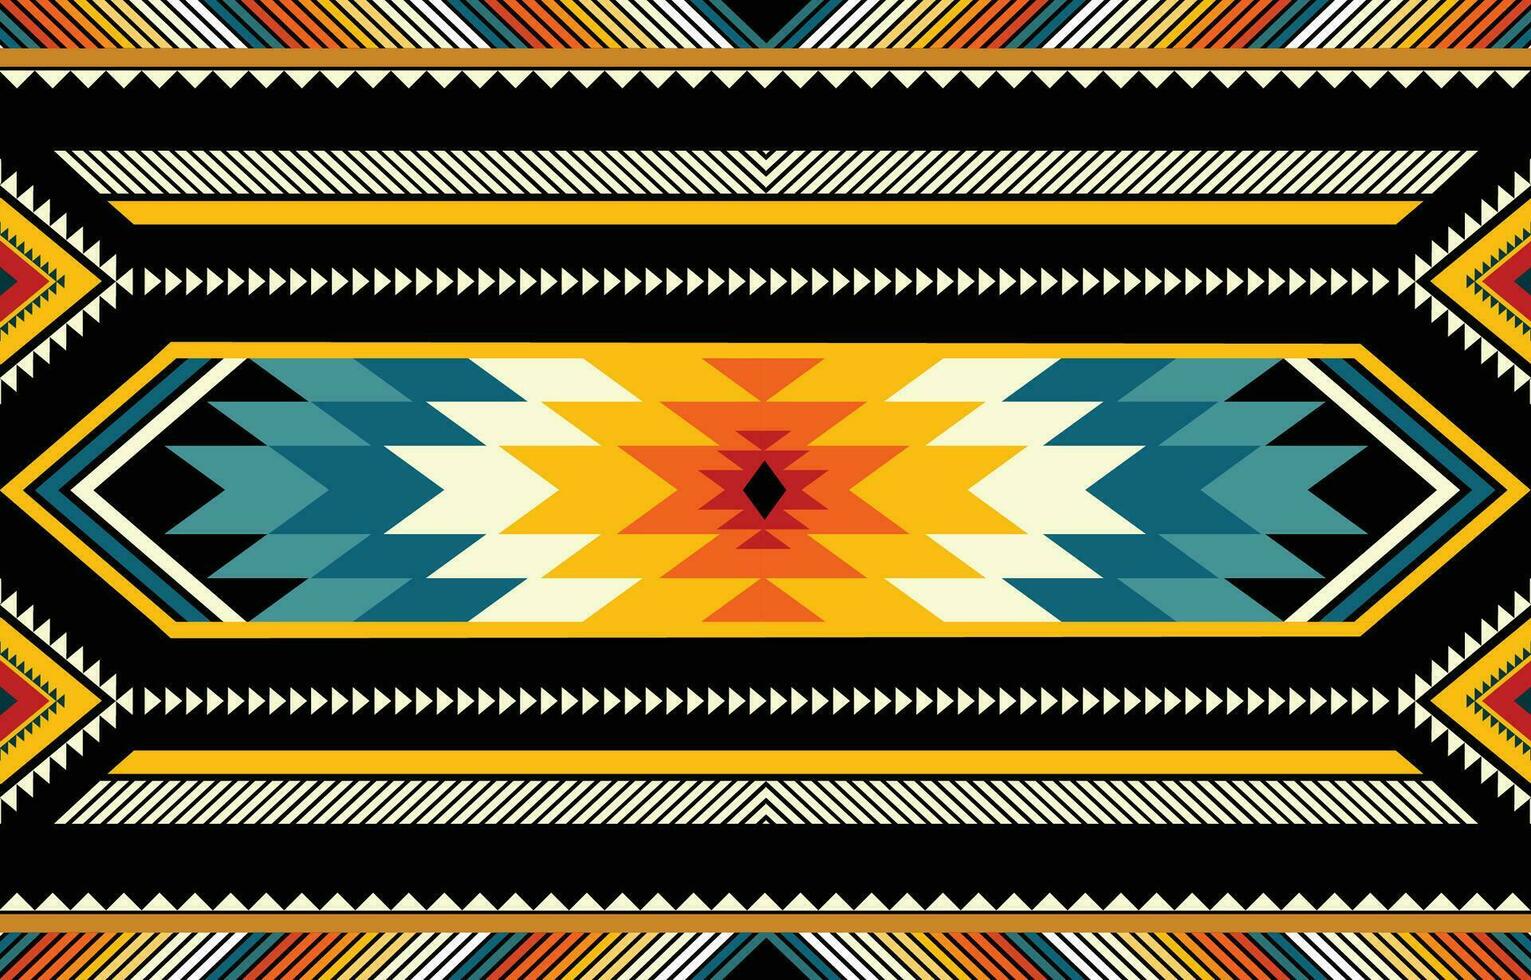 de geometrisk etnisk mönster av traditionell stil. navajo, Amerika indisk mönster. design för bakgrund, tapet, Kläder, omslag, batik, tyg, och grafik. vektor illustration.